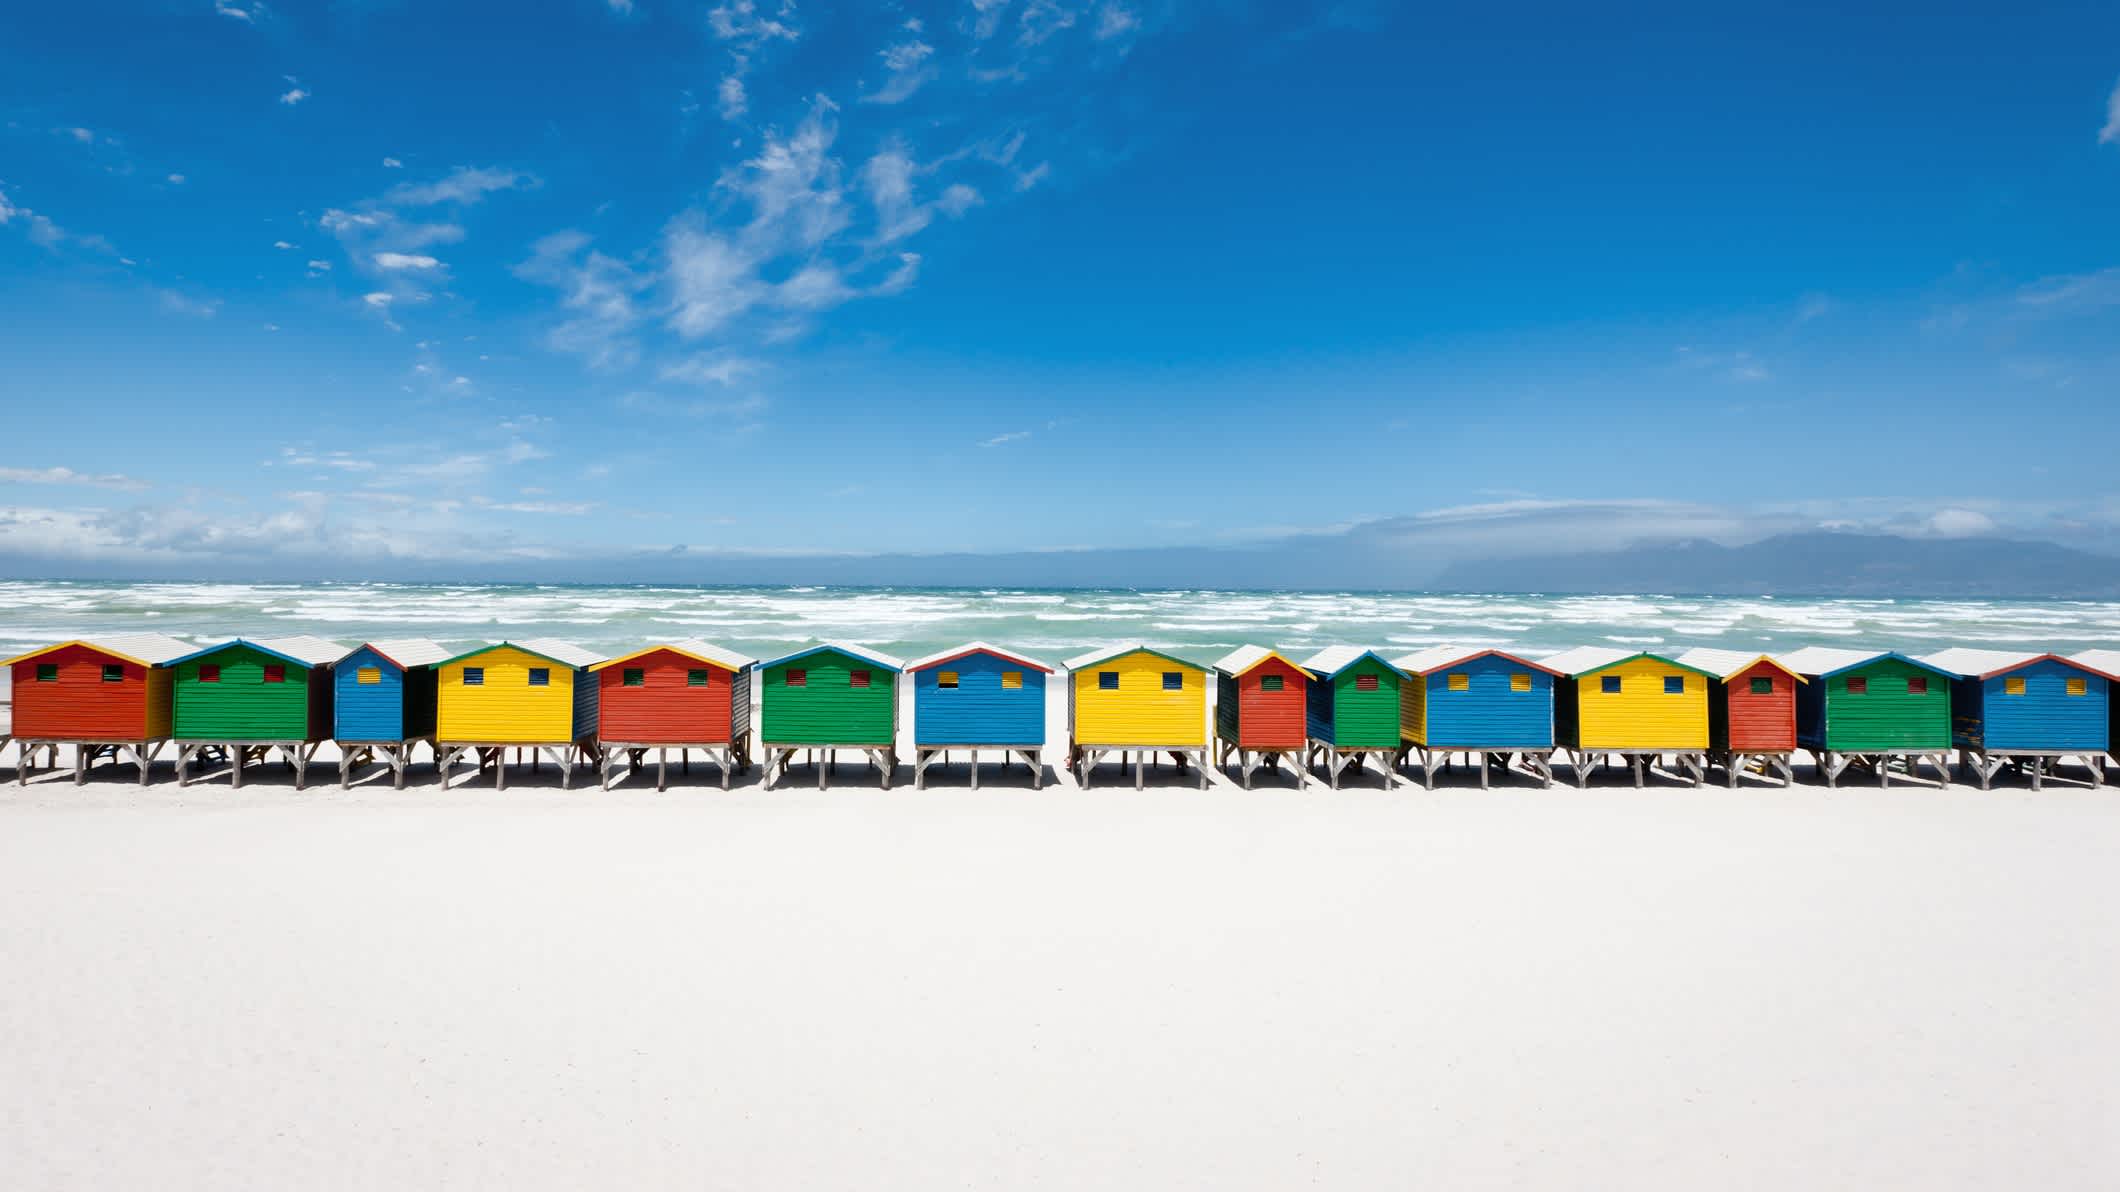 Strandhütten am weißen Sandstrand von Muizenberg, Kapstadt, Südafrika.